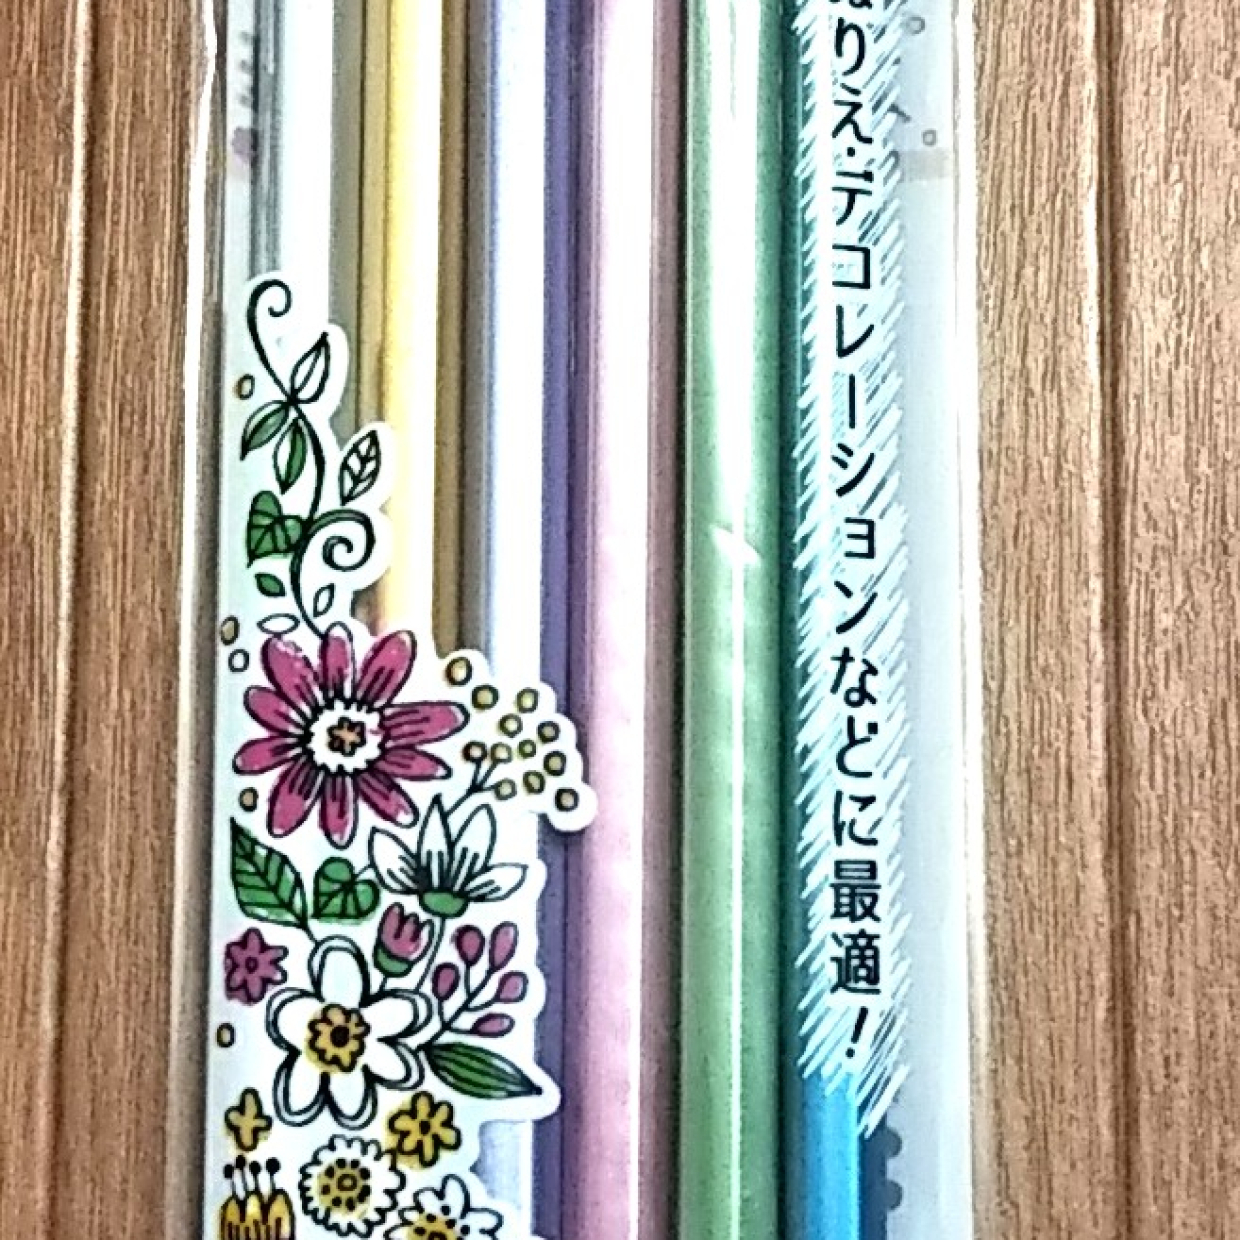  【セリア】キラキラ光る「メタリック色鉛筆」は大人でも欲しくなる♡ 